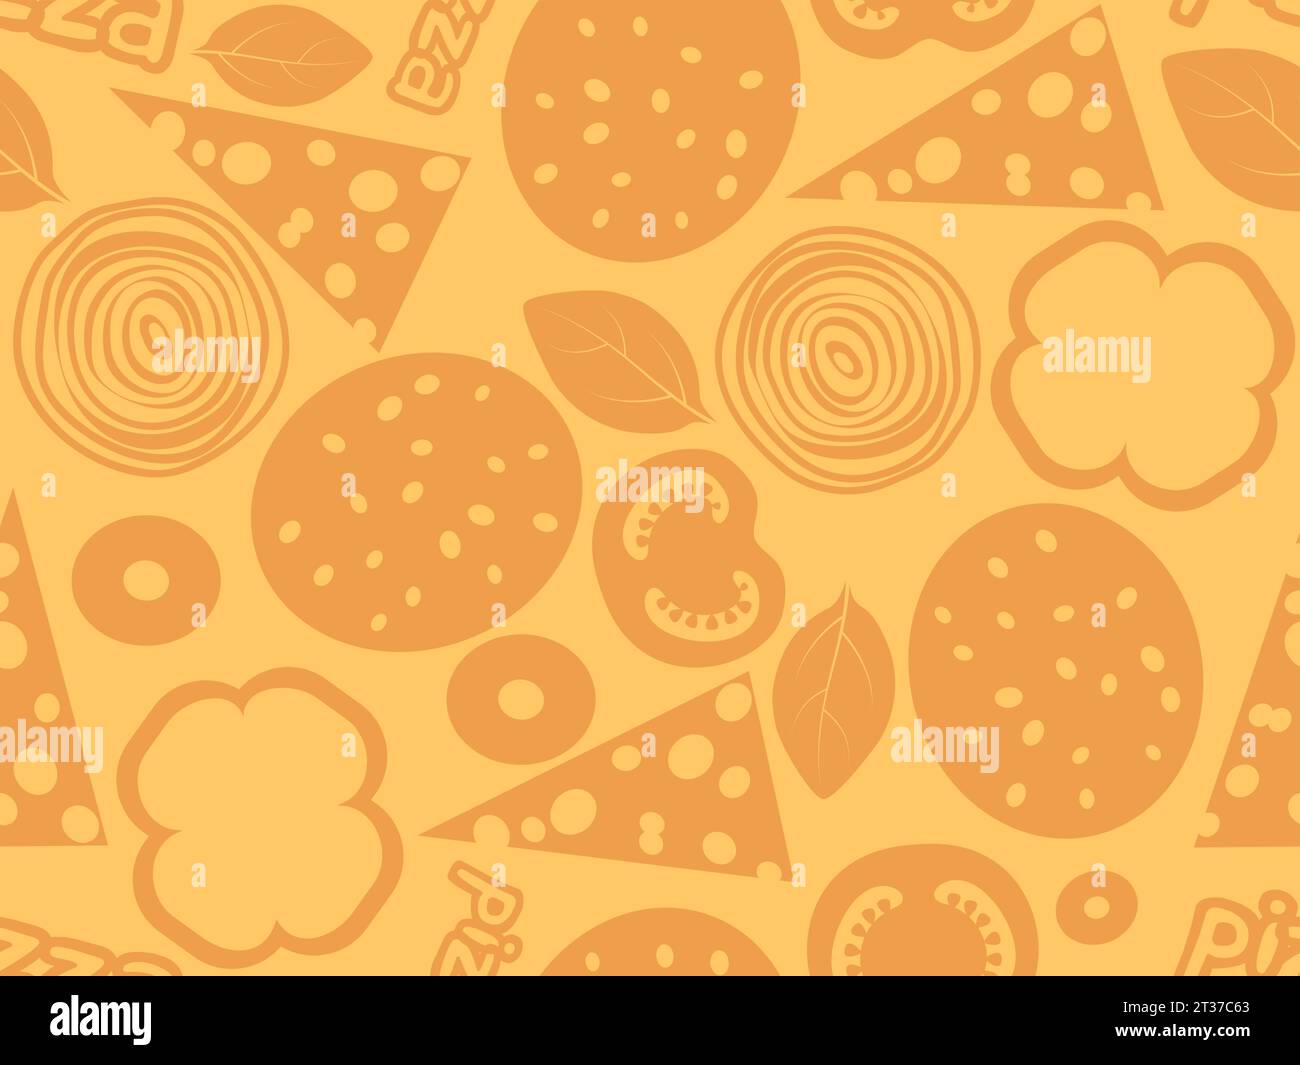 Pizza Ingredientes Simple patrón sin fisuras. Fondo de color naranja con salami, queso, setas, oliva, albahaca, tomate, pimentón. Rellenar o ajustar página web Ilustración del Vector